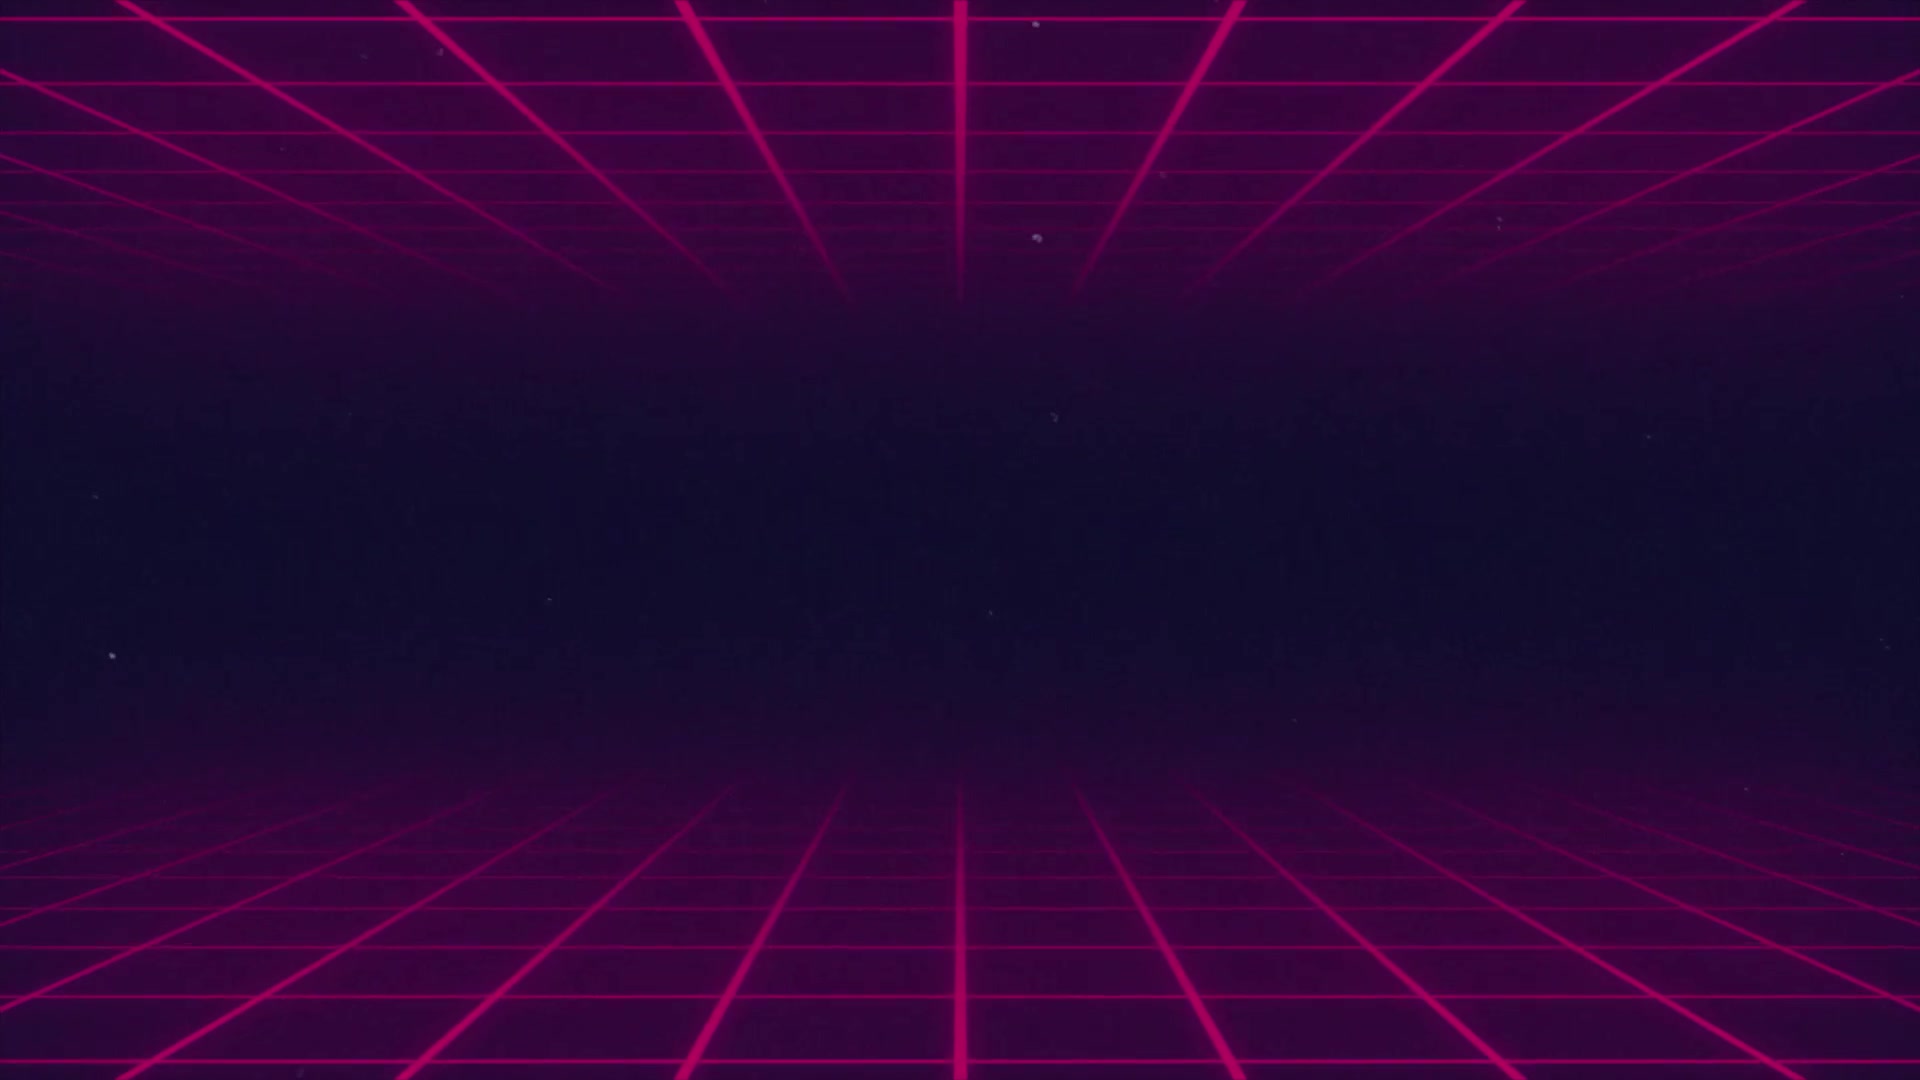 Retro Wave & Neon Backgrounds for Premiere Pro Videohive 34301920 ...